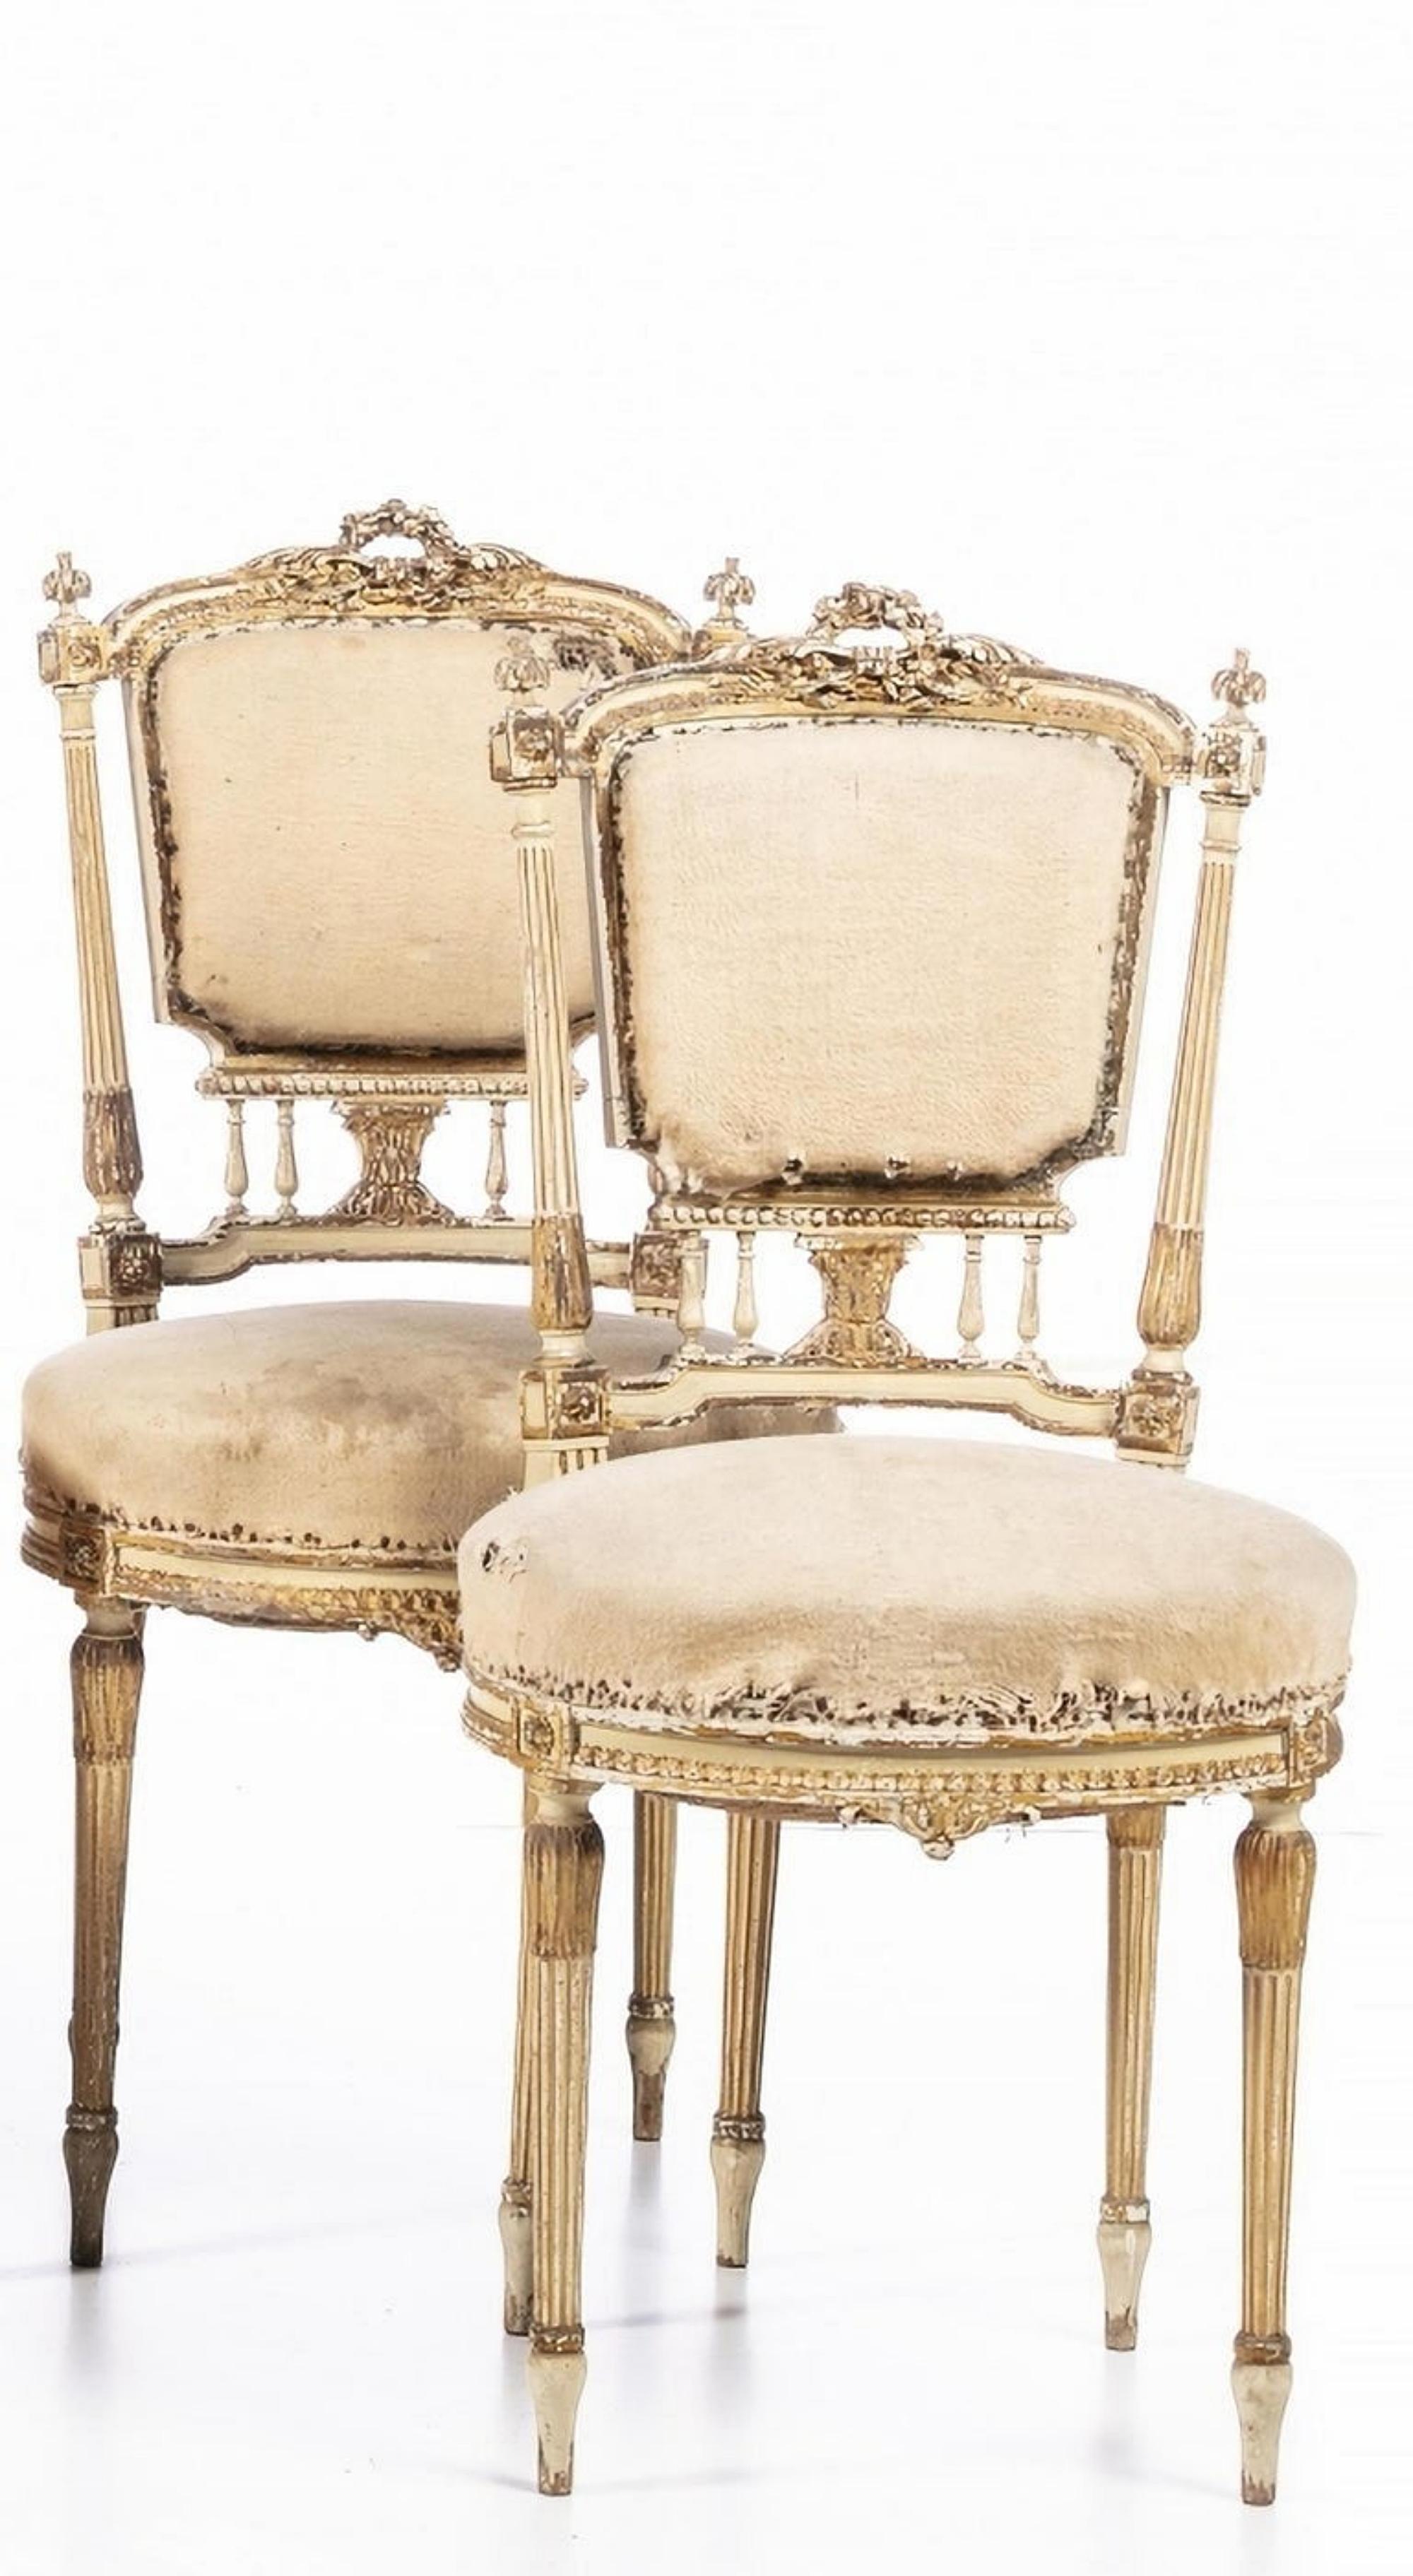 Set 5 französische Stühle
Louis XV-Stil
19. Jahrhundert
Aus bemaltem und vergoldetem geschnitztem Holz. Sitz und Rücken gepolstert.
Fehler und Mängel.
Nie wiederhergestellt
Abmessungen: (größer) 96 x 52 x 42 cm.